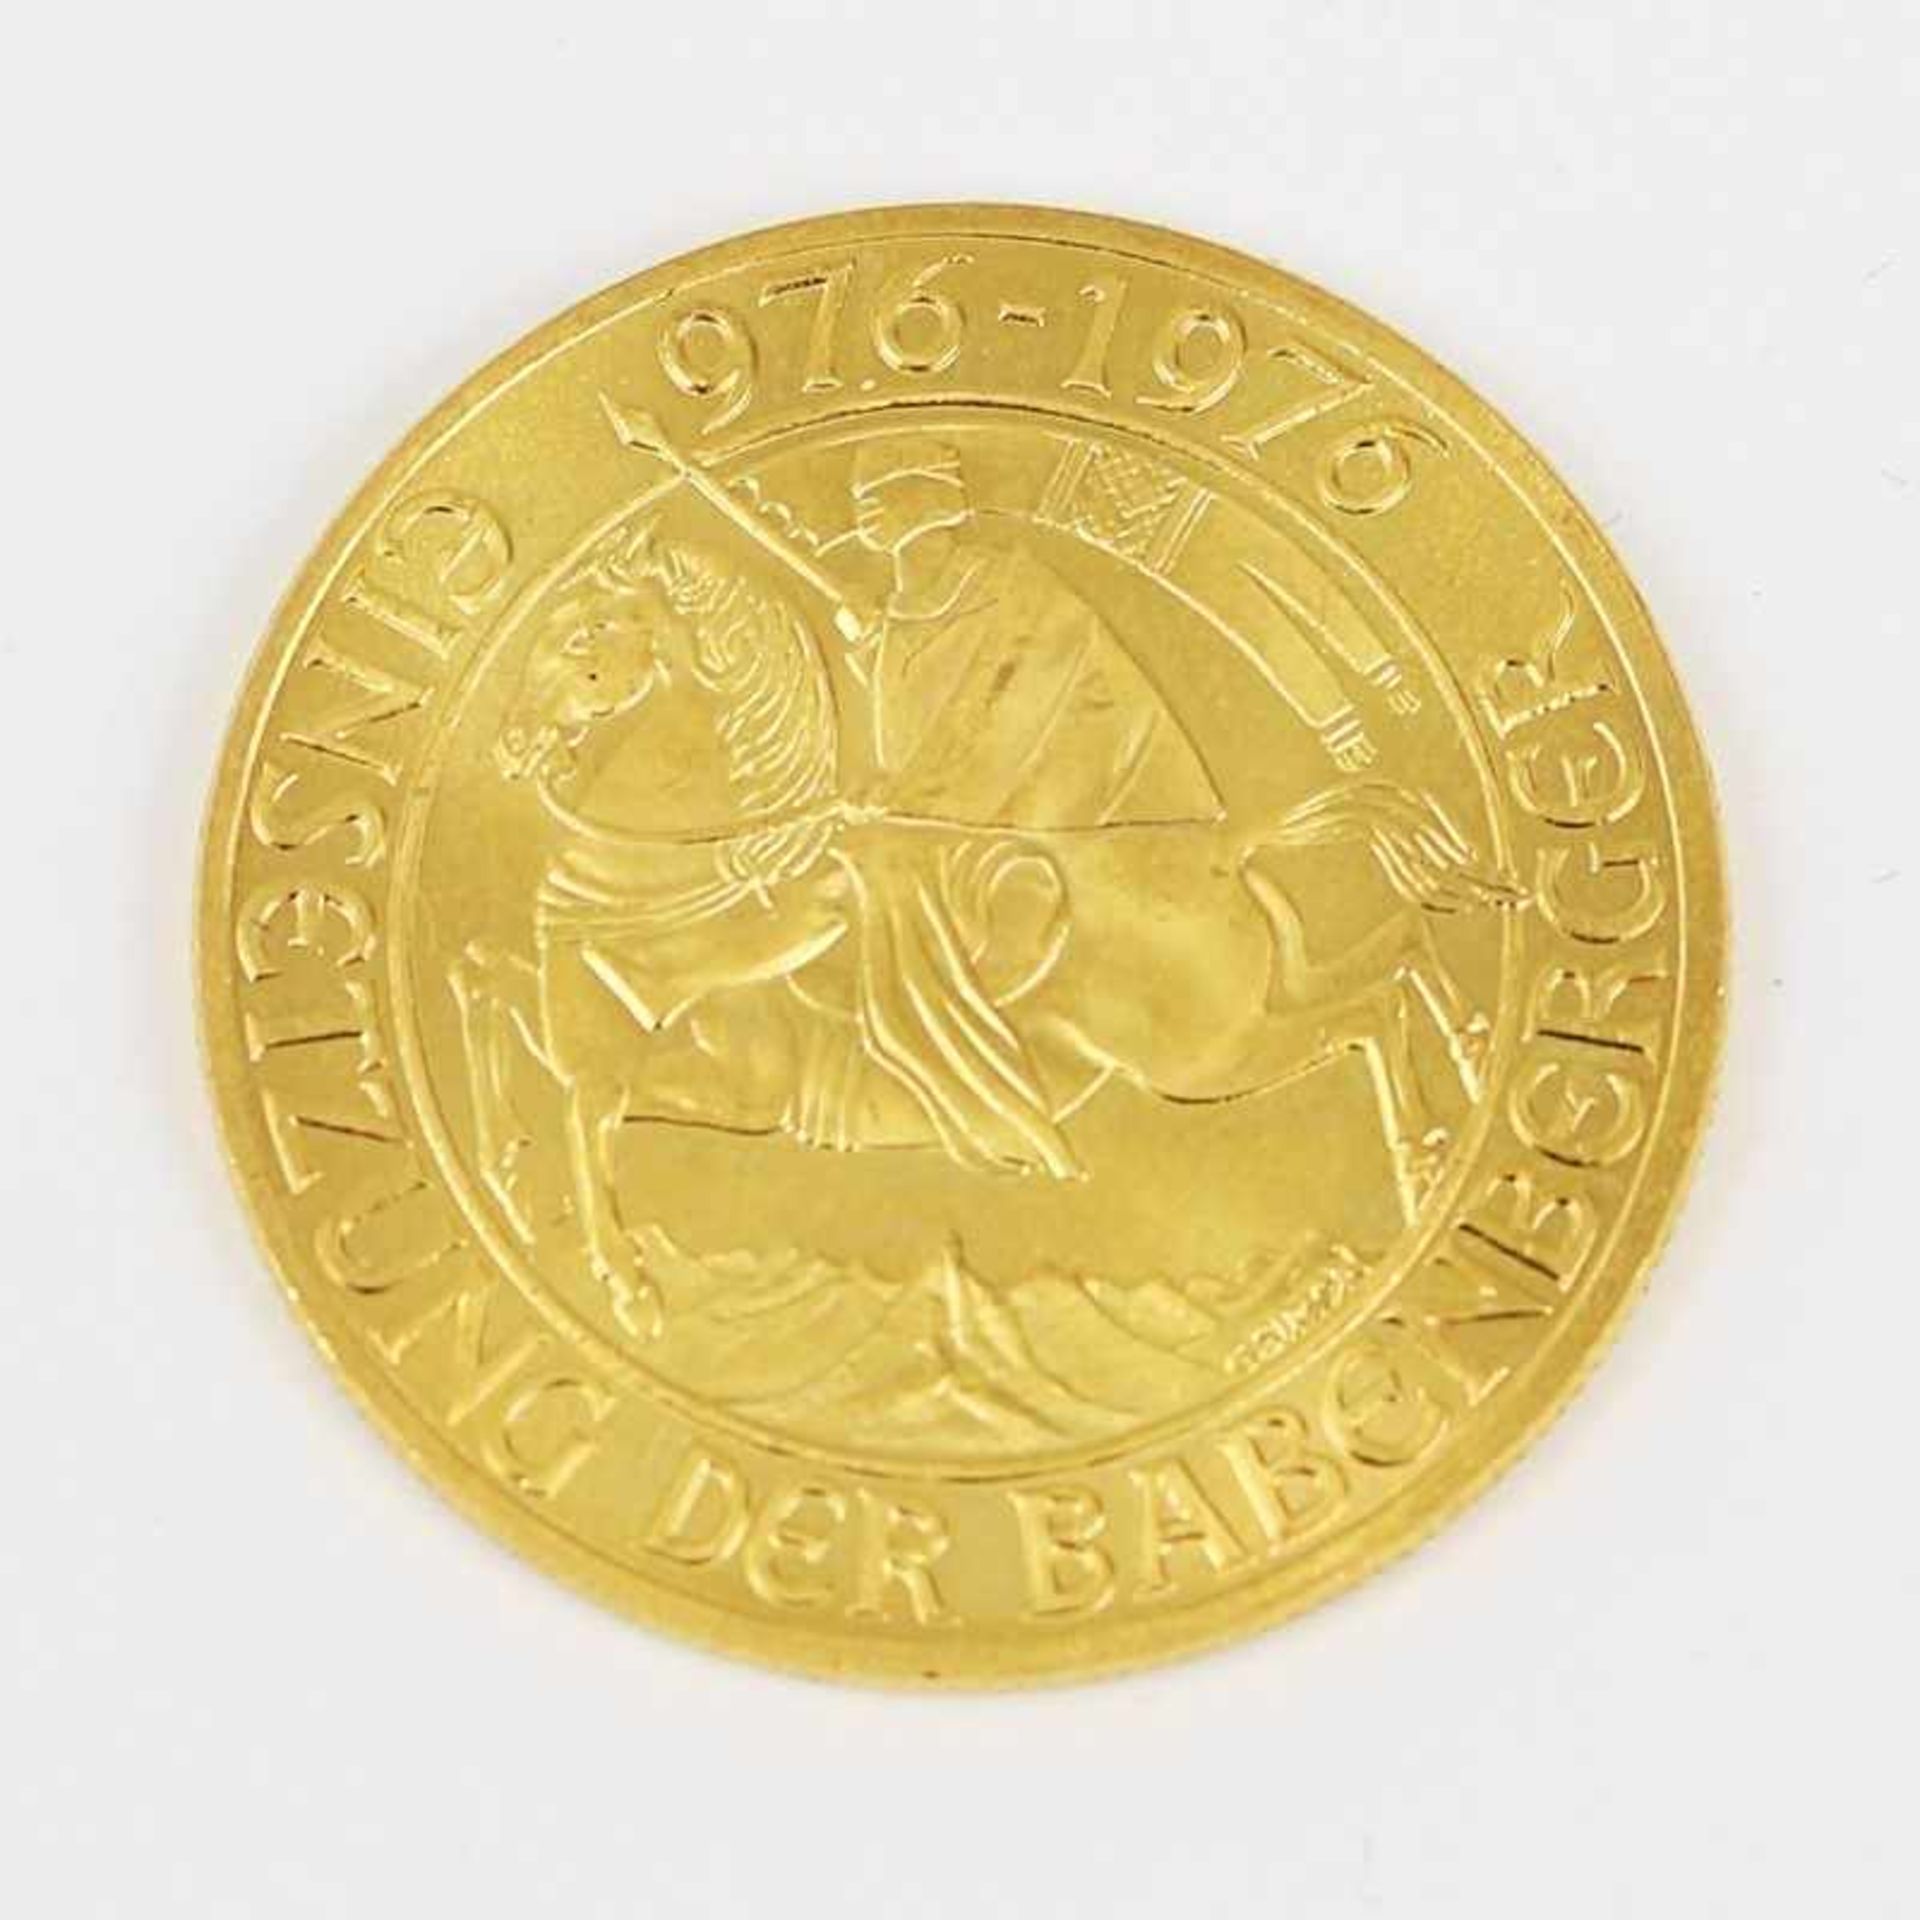 Gold Österreich - 1000 Schilling 1976 Einsetzung der Barbenberger, D 27 mm, G 13,4g, stgl